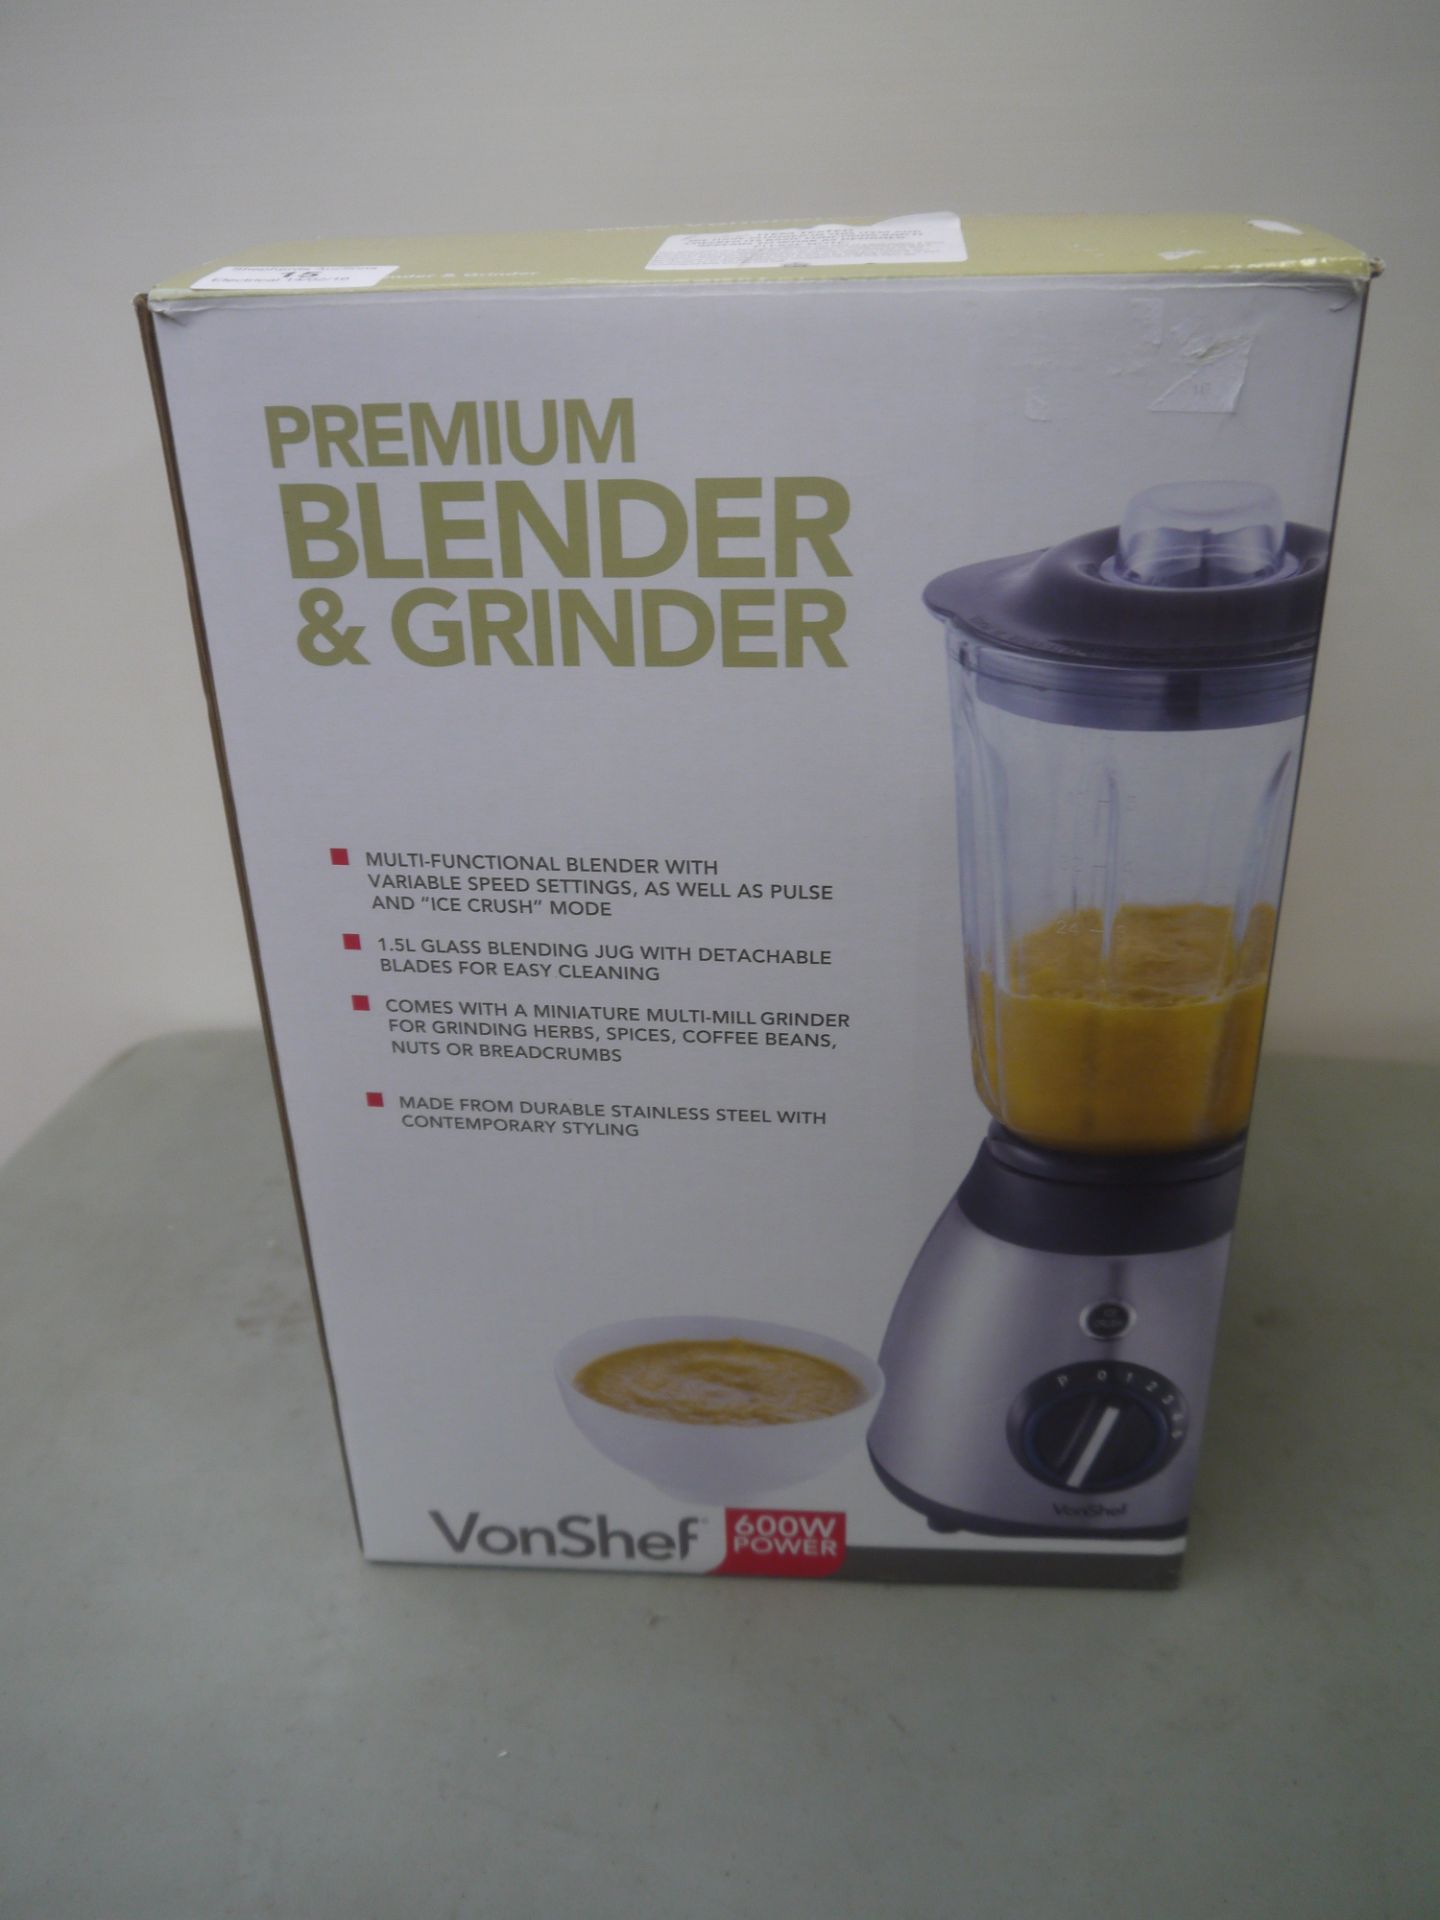 VonShef Premium blender & grinder with a 1.5L glas